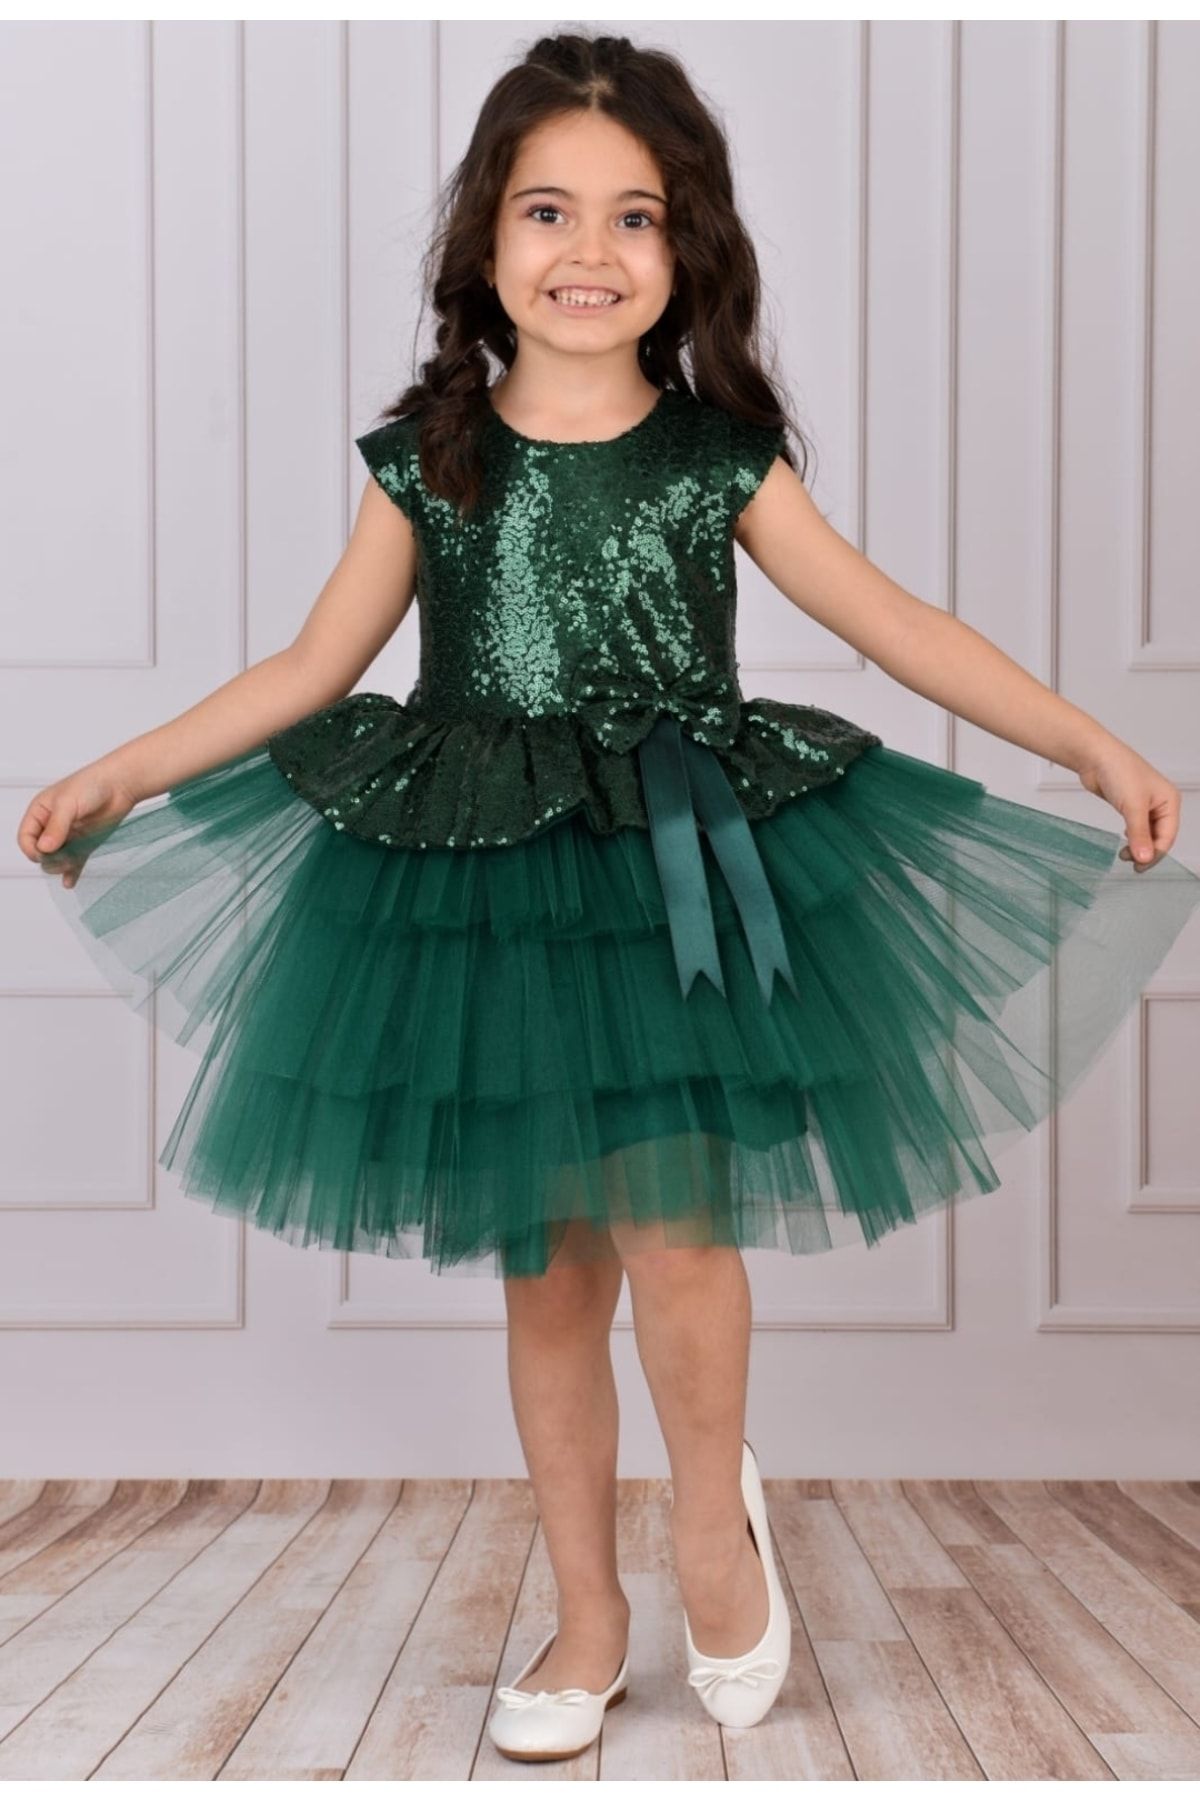 TONTİŞLER BEBEK VE ÇOCUK GİYİM Bayramlık Kız Çocuk Elbise 10-11-12 Yaş Kaliteli Ürün Doğumgünü,hediyelik